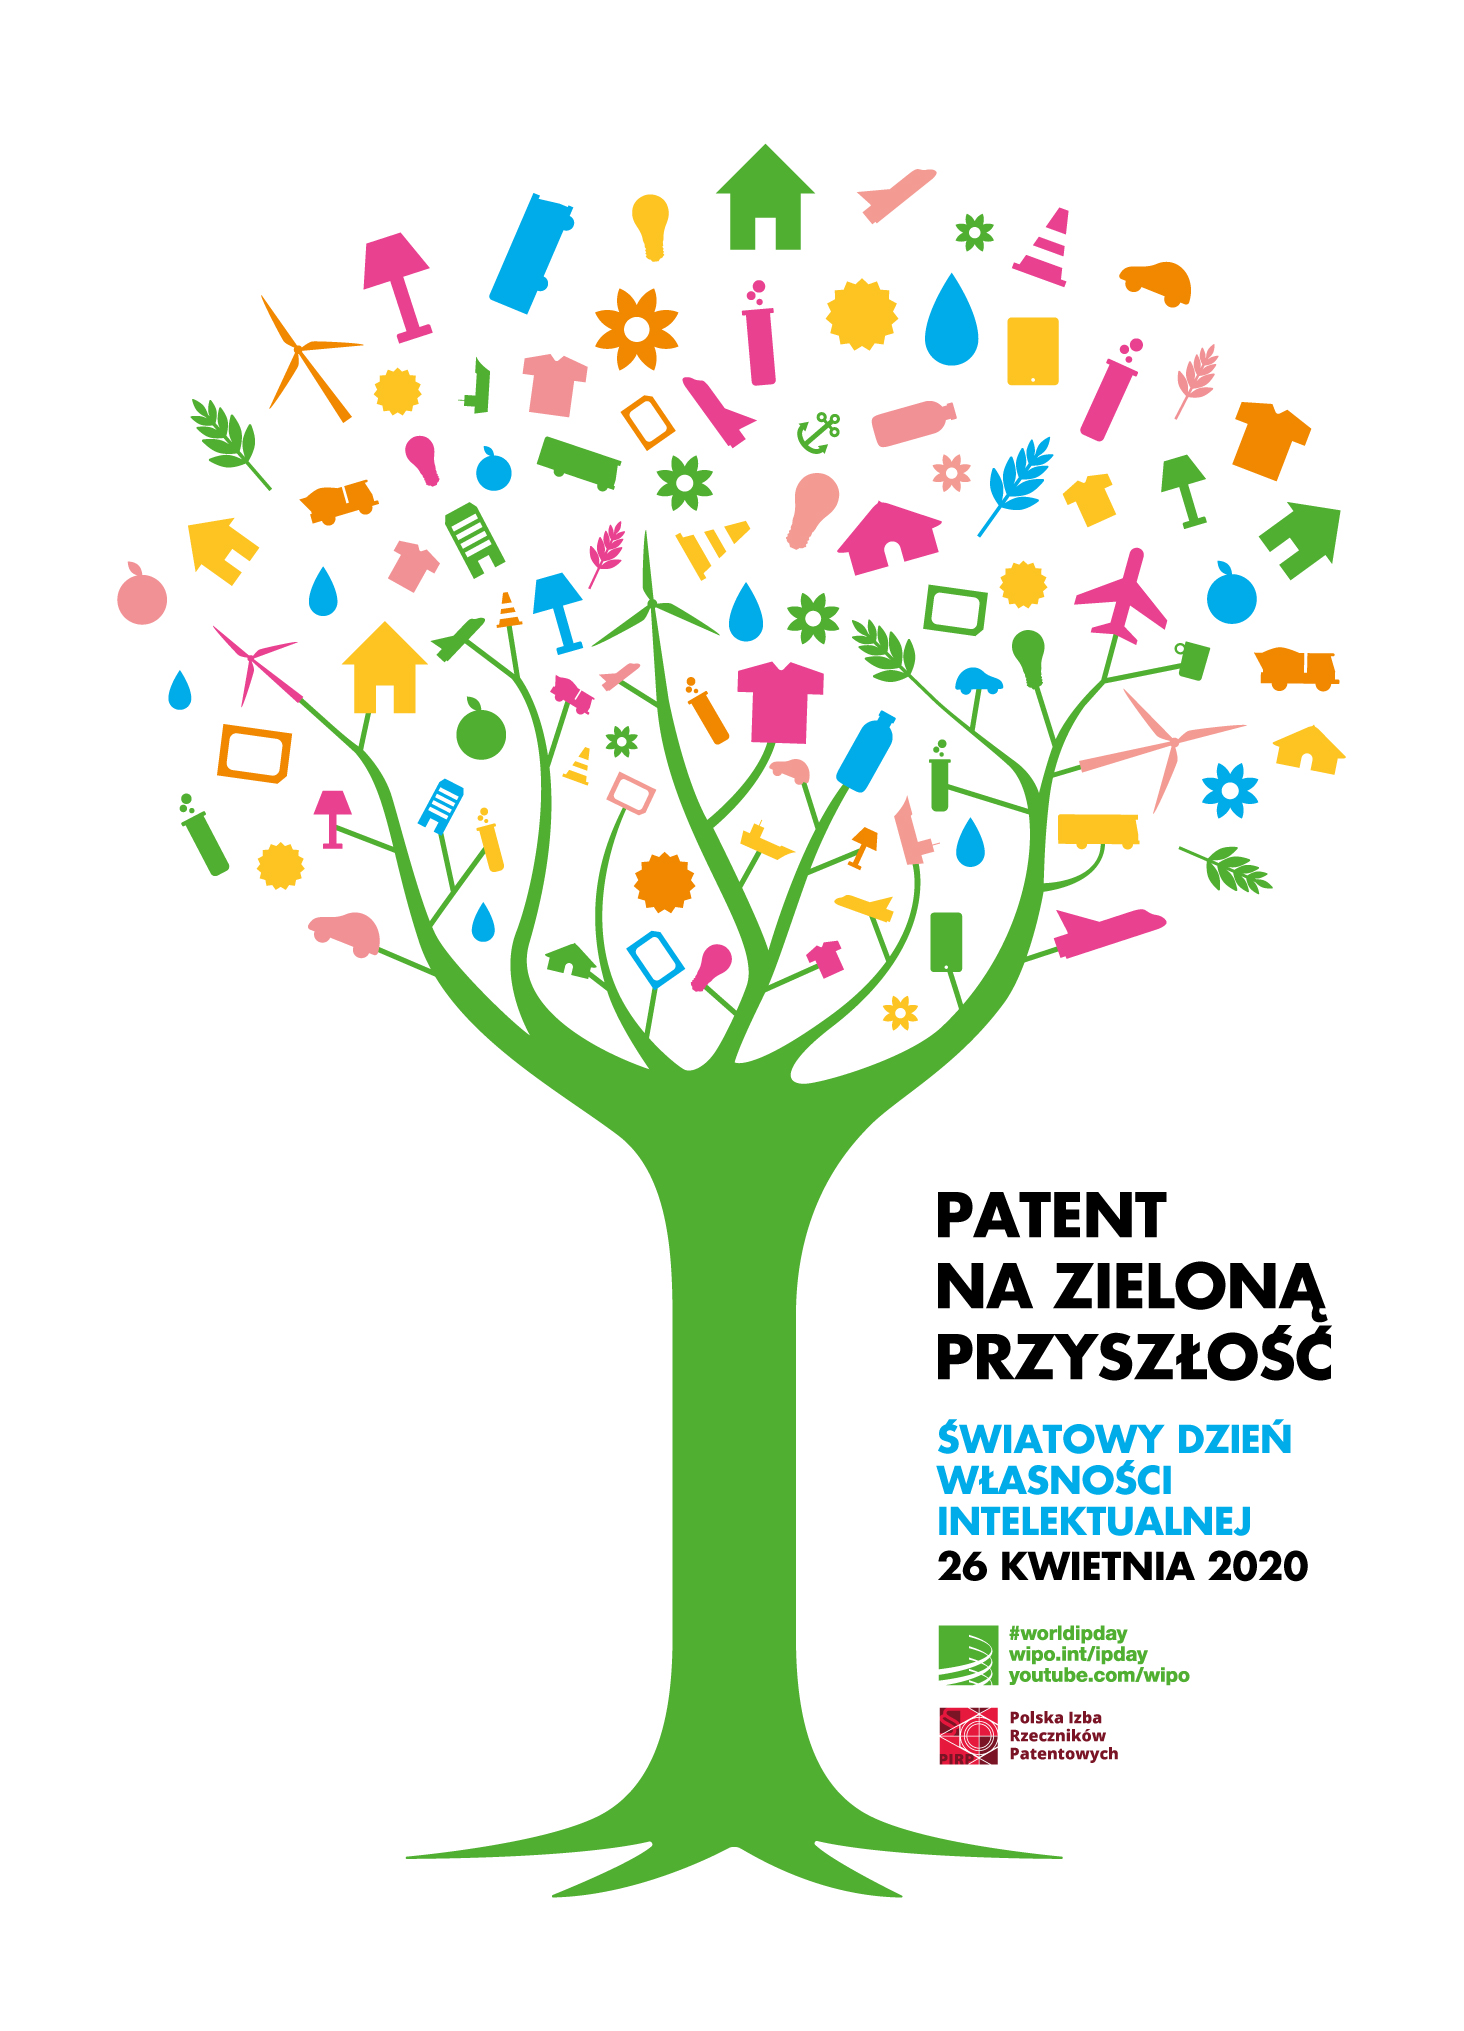 26 kwietnia  Światowy Dzień Własności Intelektualnej   –  Zapraszamy na bezpłatne konsultacje rzeczników patentowych.